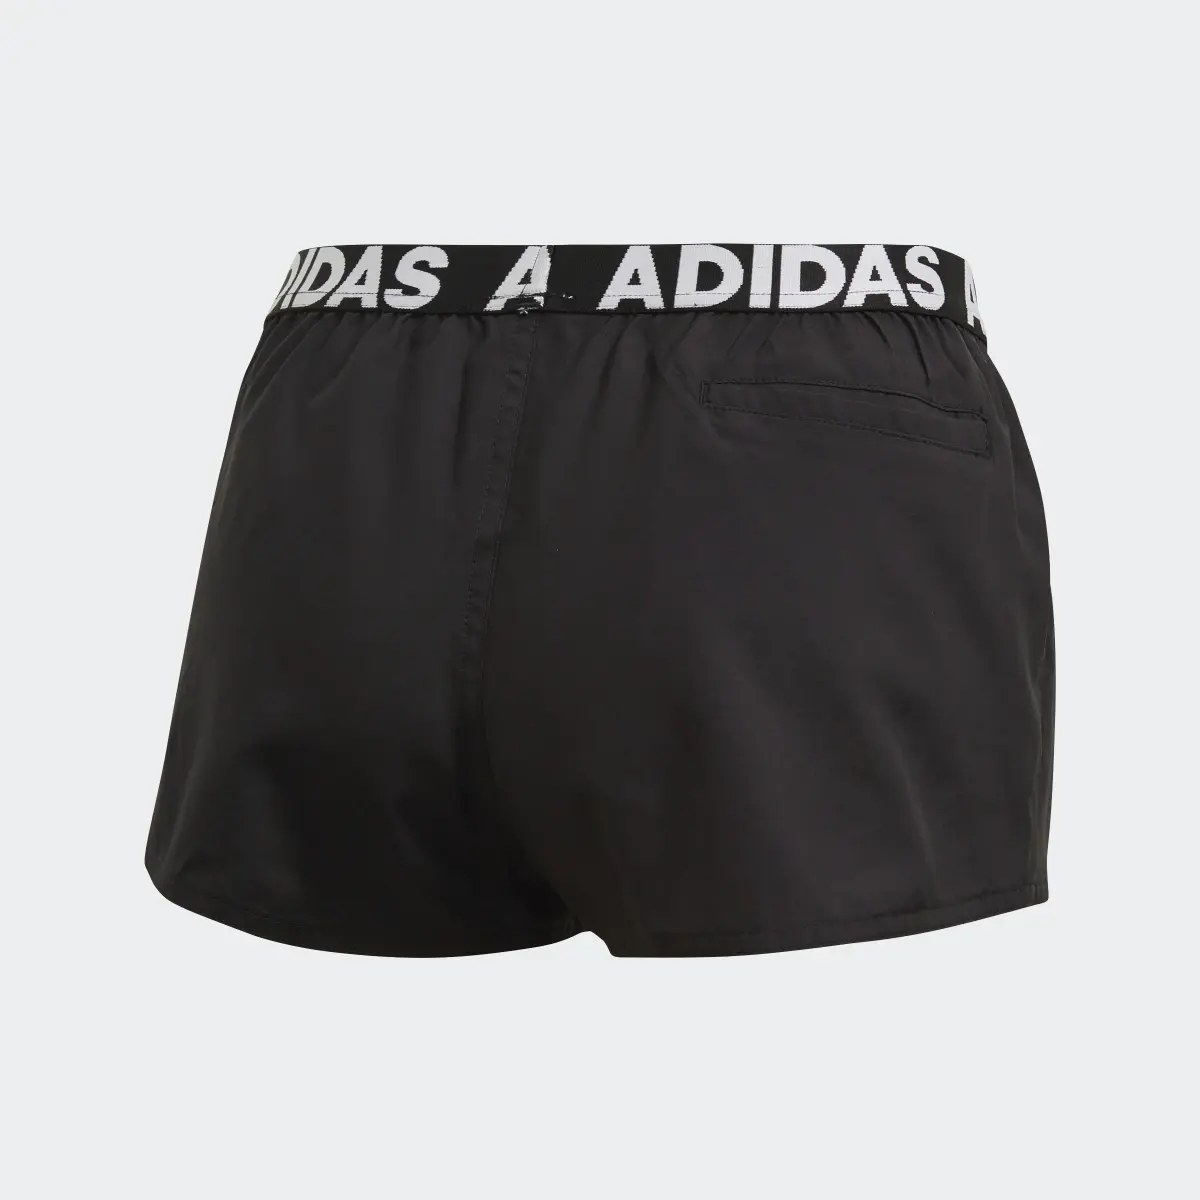 Adidas Beach Shorts. 2